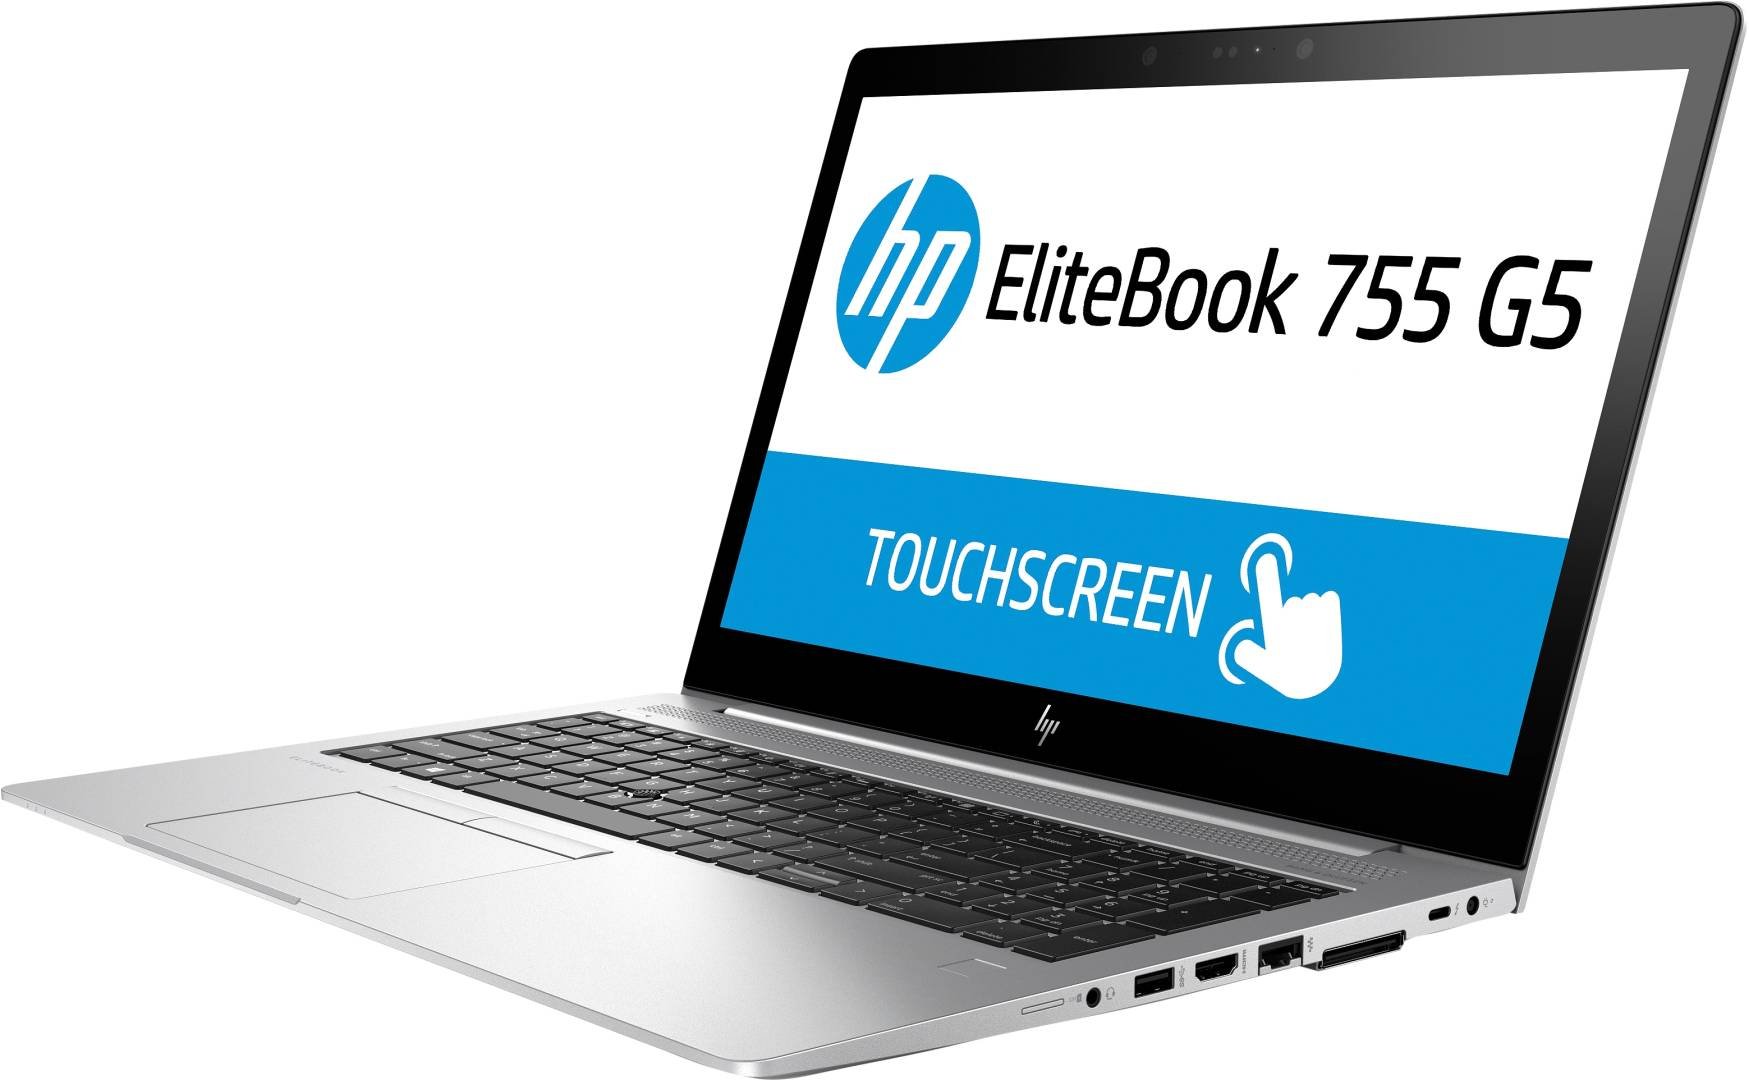 مشخصات و خرید اینترنتی لپ تاپ اچ پی الیت بوک HP EliteBook 755 G5 با پردازنده AMD Ryzen 5 با بهترین قیمت از فروشگاه بهترین لپ تاپ - Bestlaptop4U